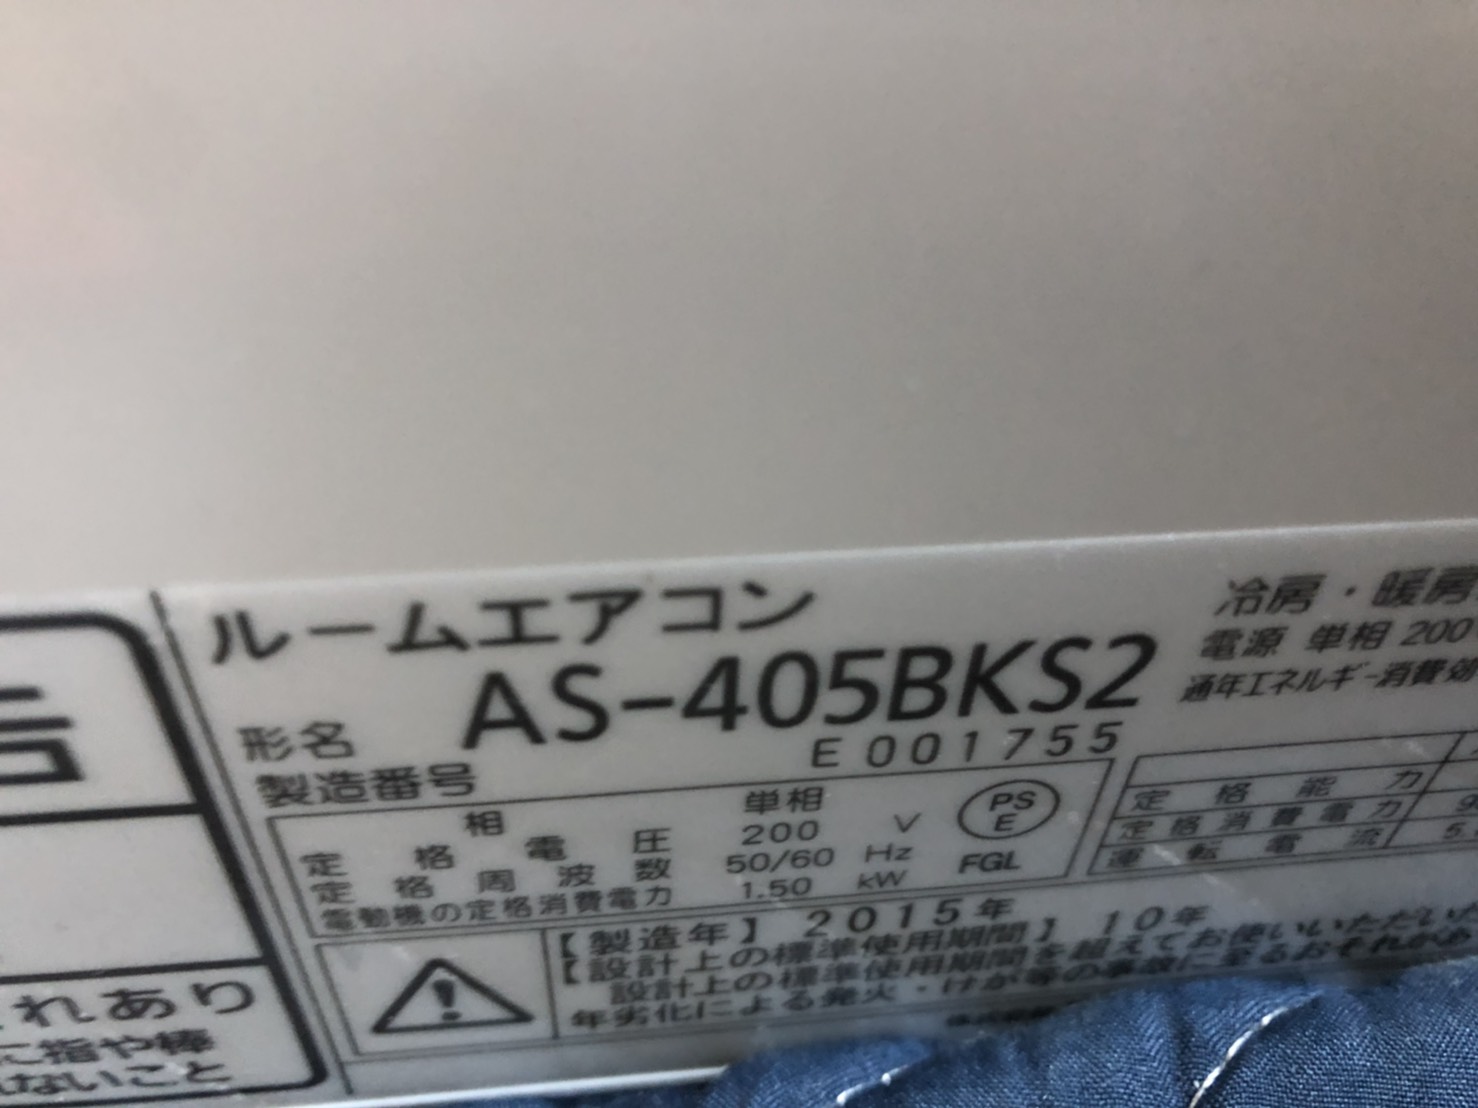 富士通ノクリア完全分解エアコンクリーニング【AS-405BKS2】 令和3年3 